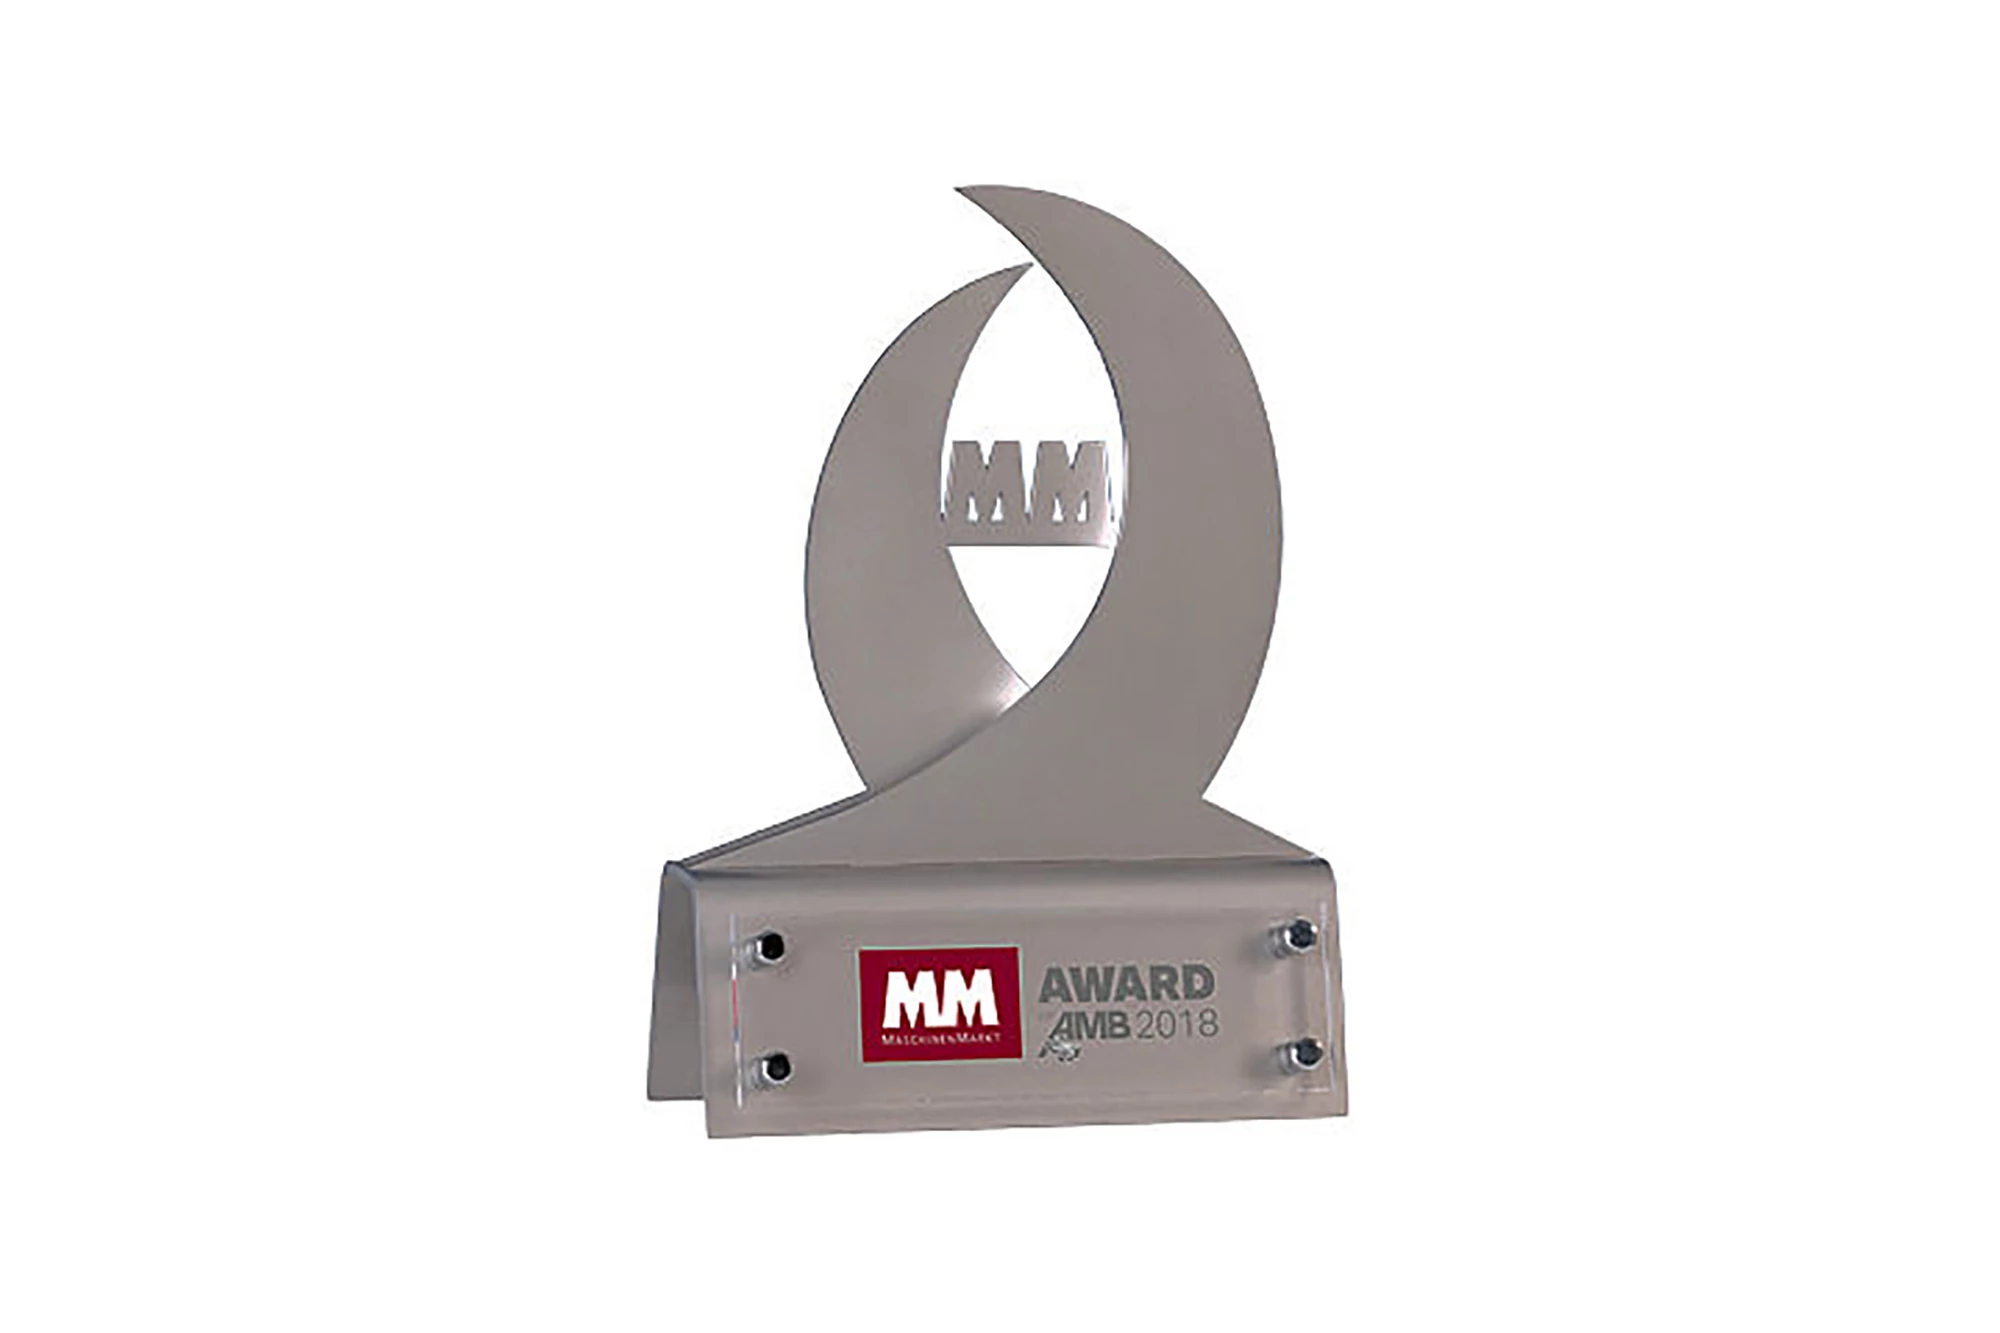 MM Award 2018